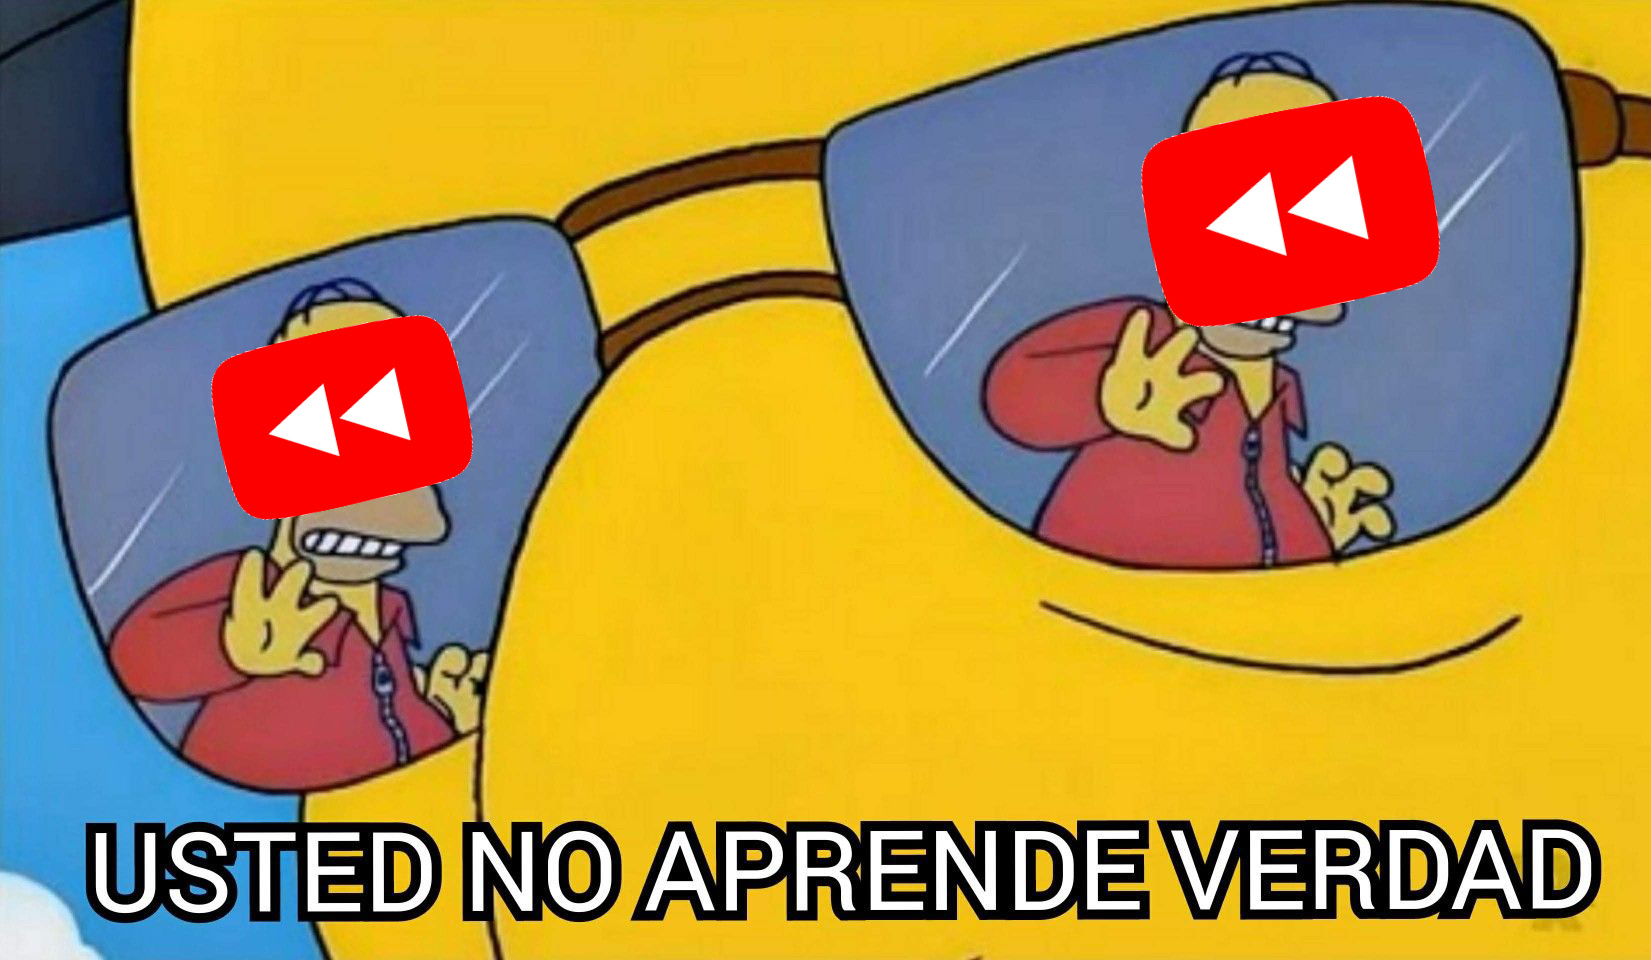 Youtube - meme